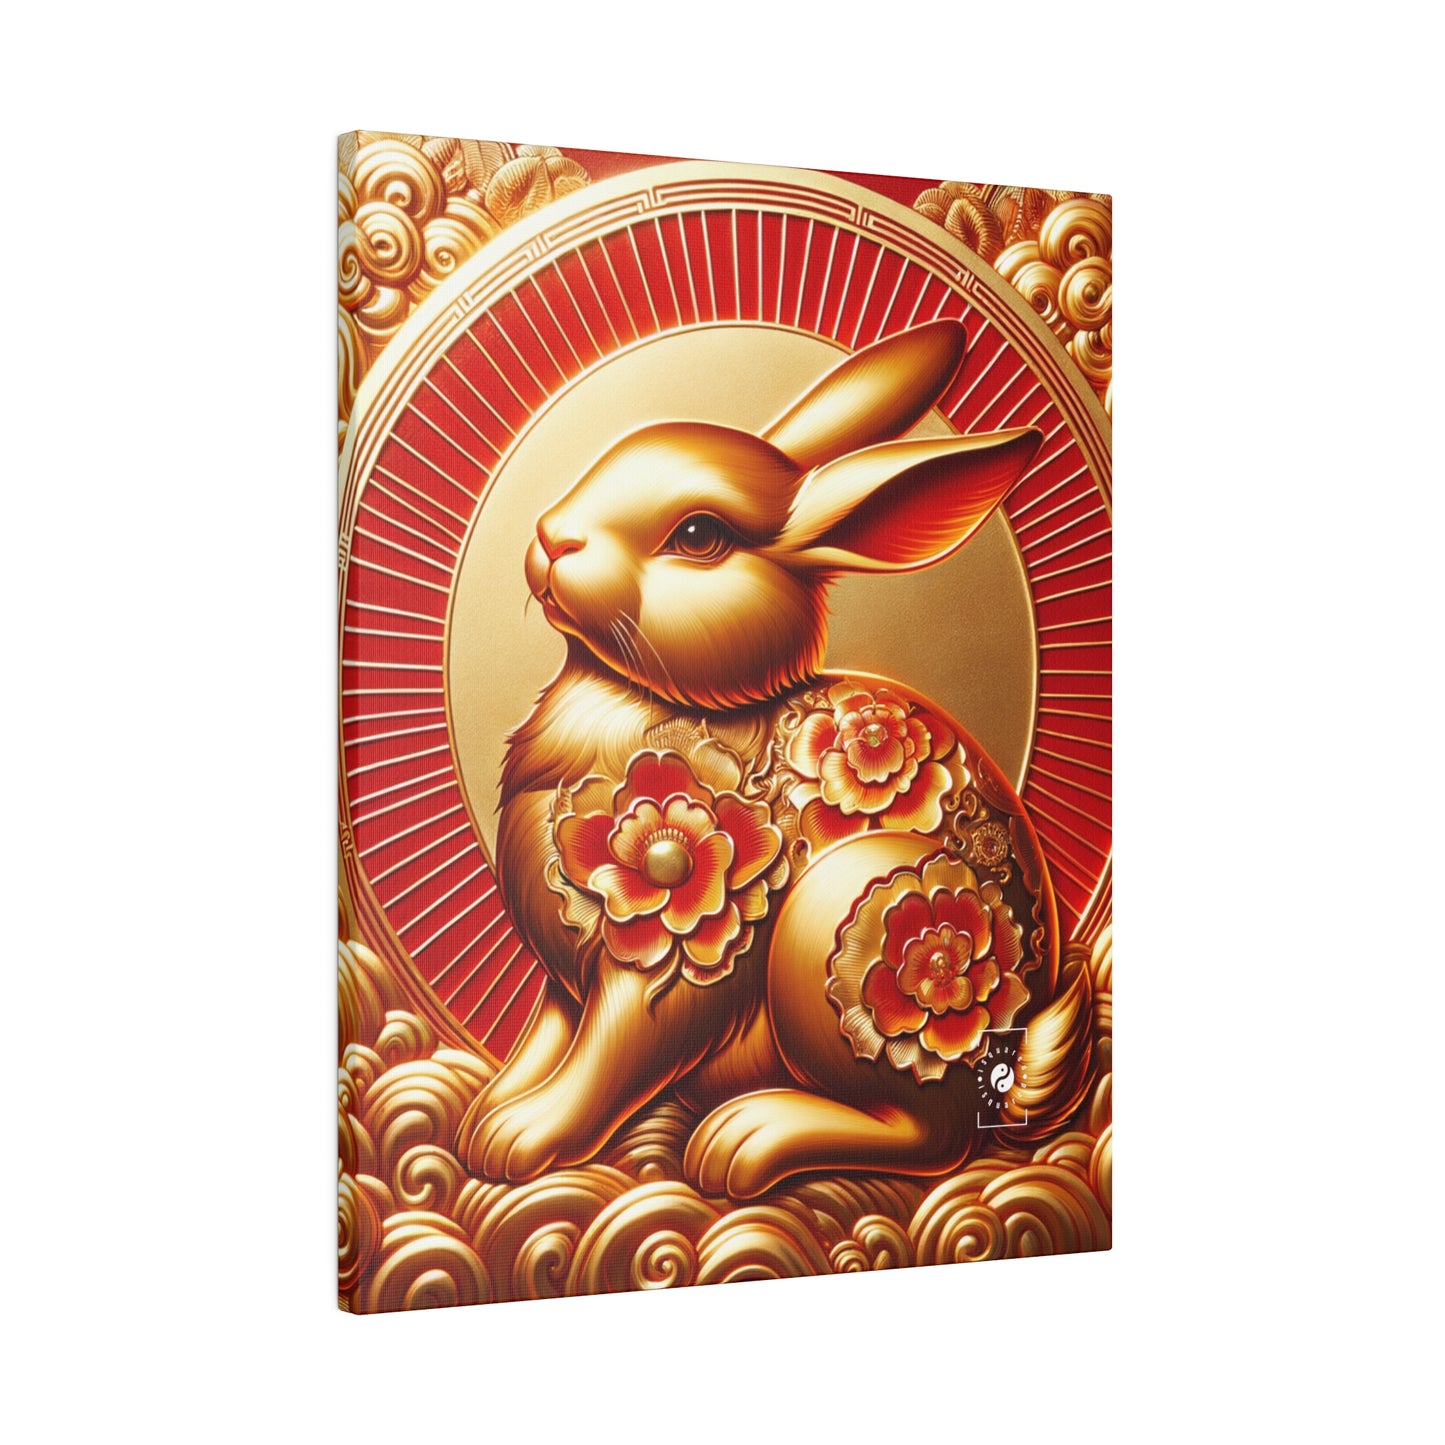 « Bénédictions dorées : splendeur du lapin lunaire » – Impression sur toile